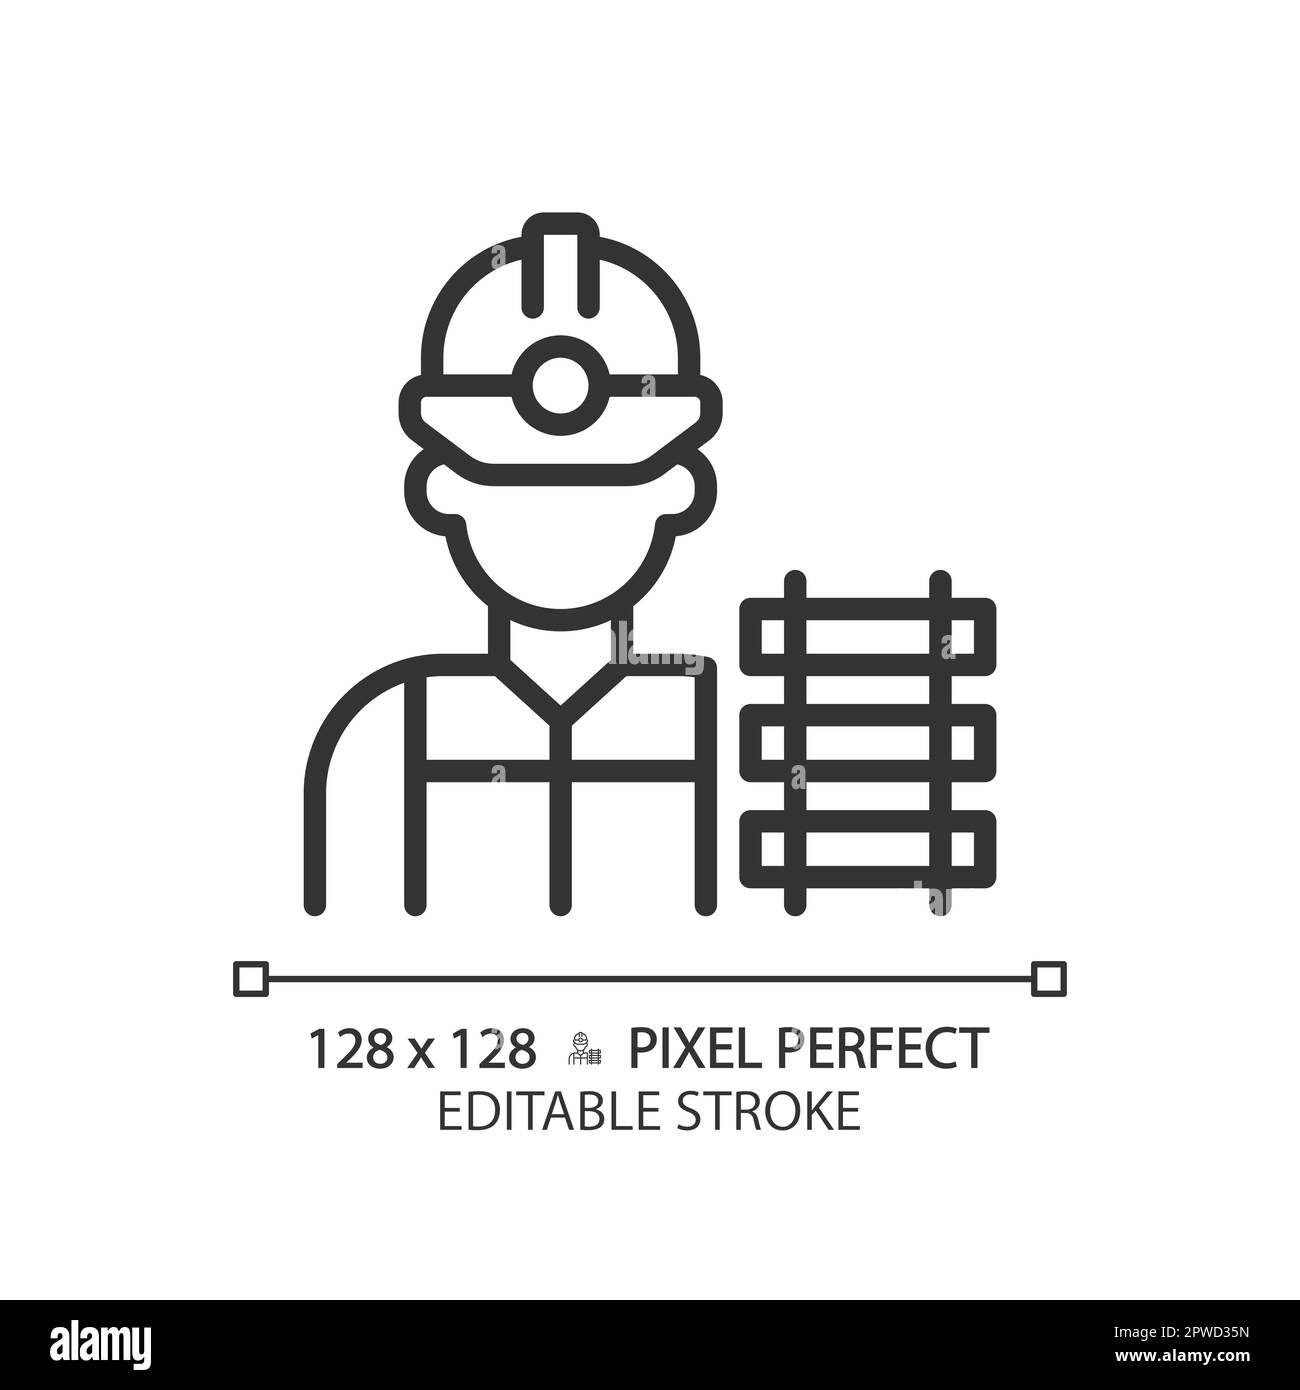 Icône linéaire pixel Perfect pour les cheminots Illustration de Vecteur